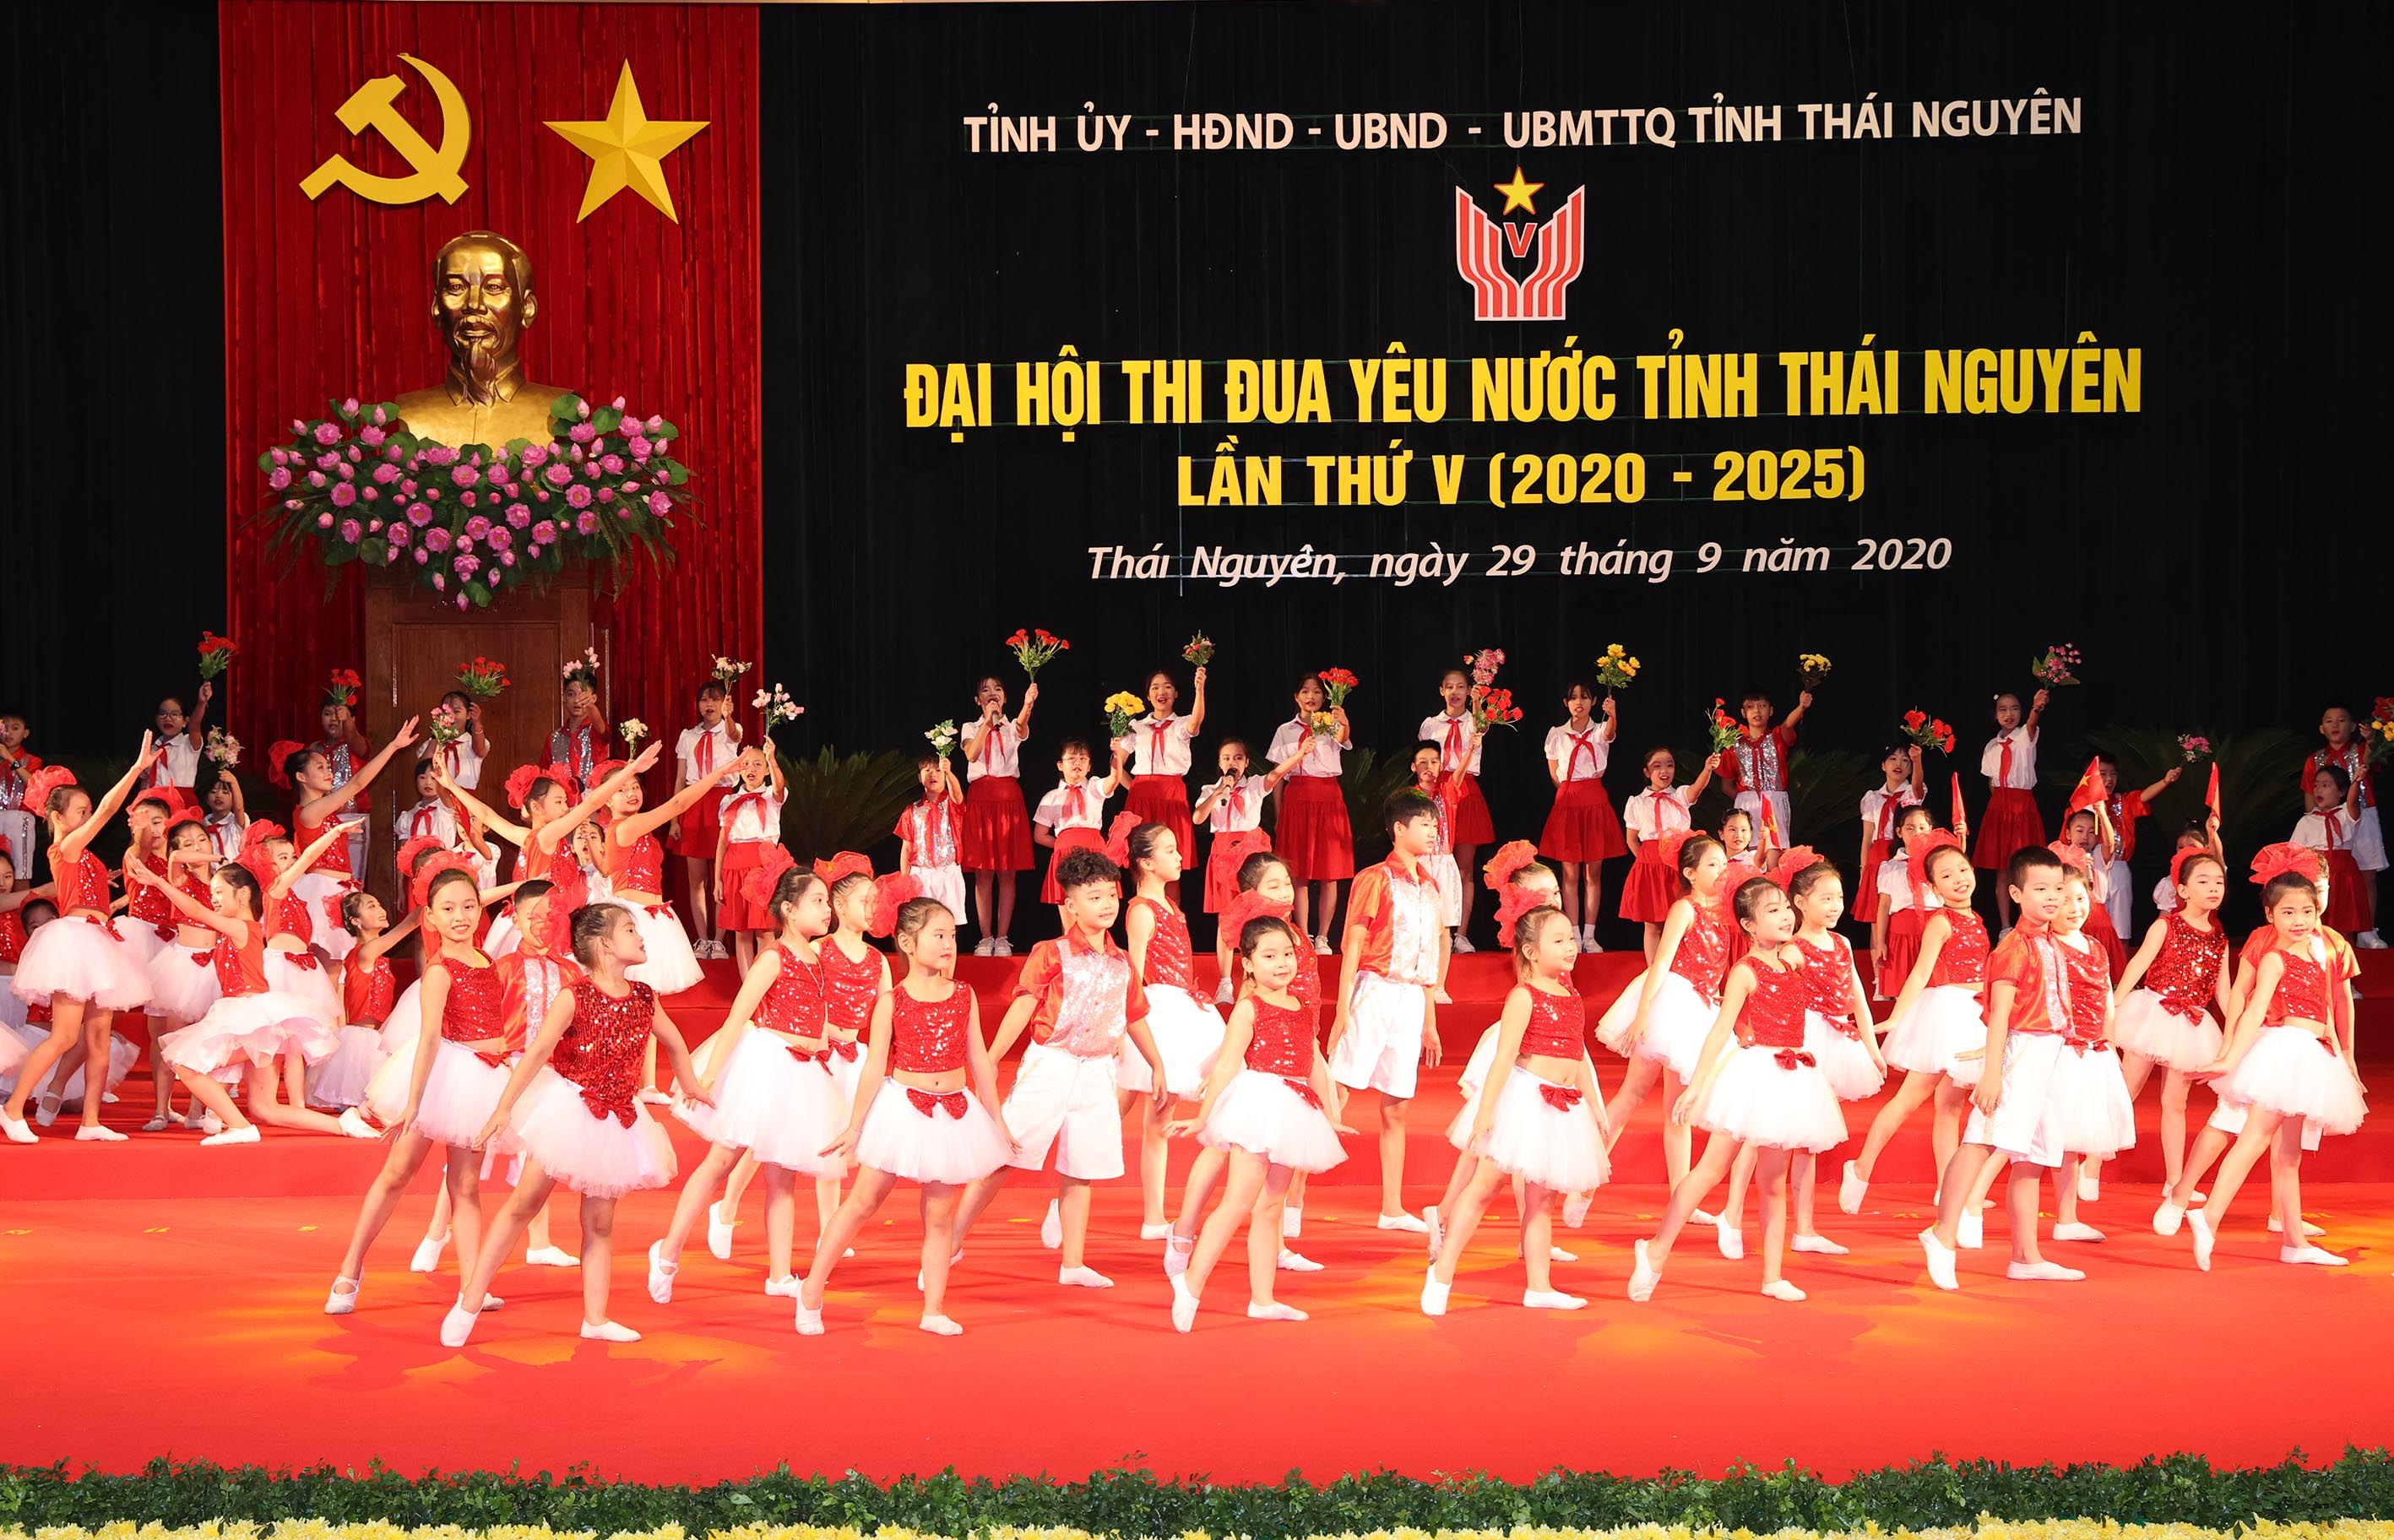 Chương trình nghệ thuật chào mừng Đại hội thi đua yêu nước tỉnh Thái Nguyên